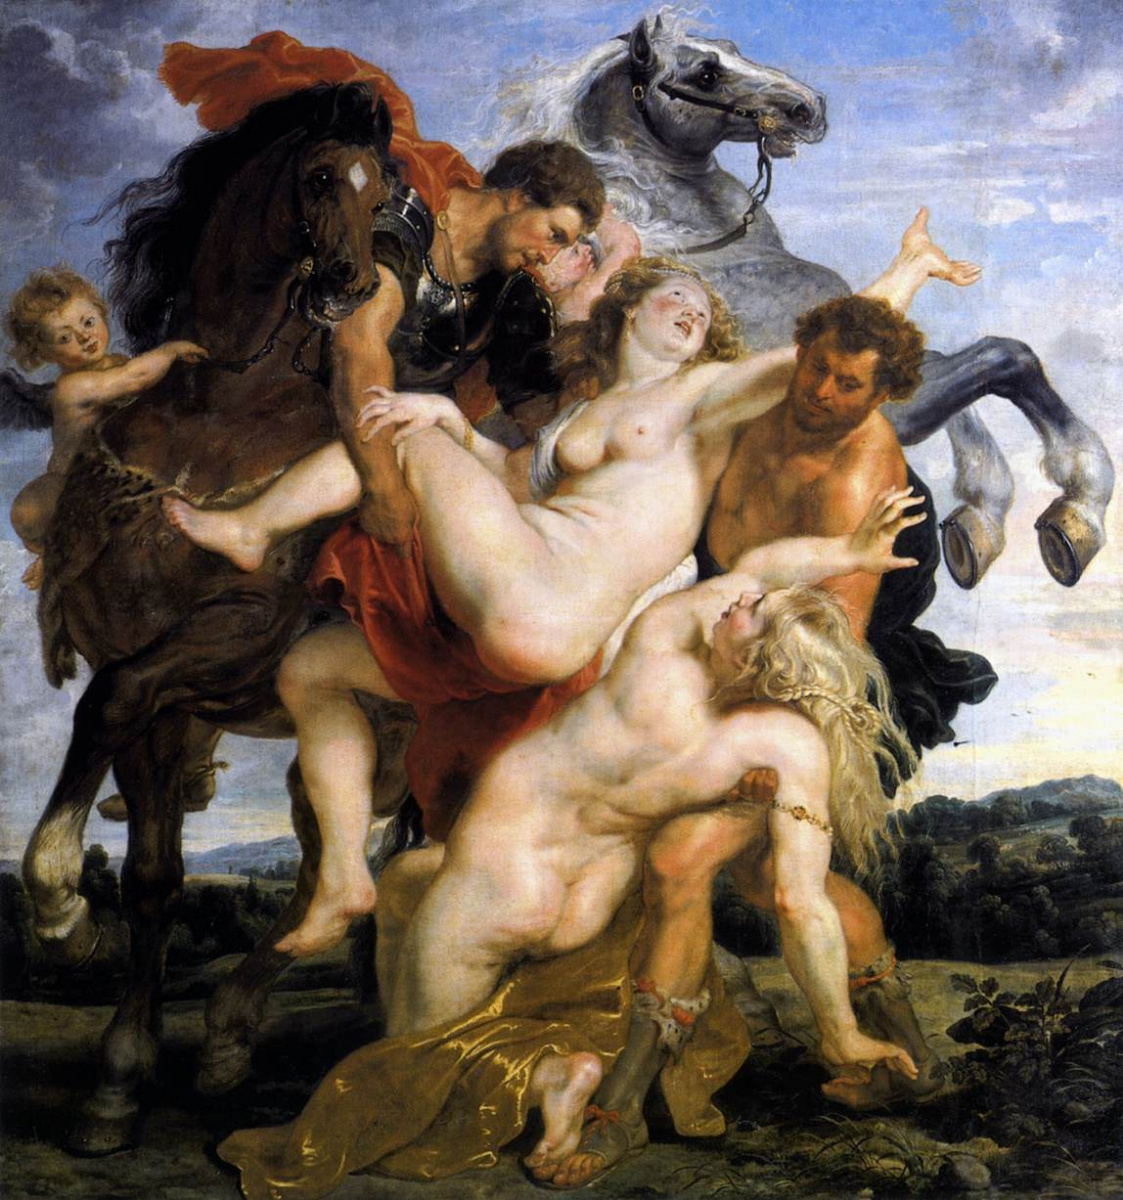 The rape of the daughters of Leucippus